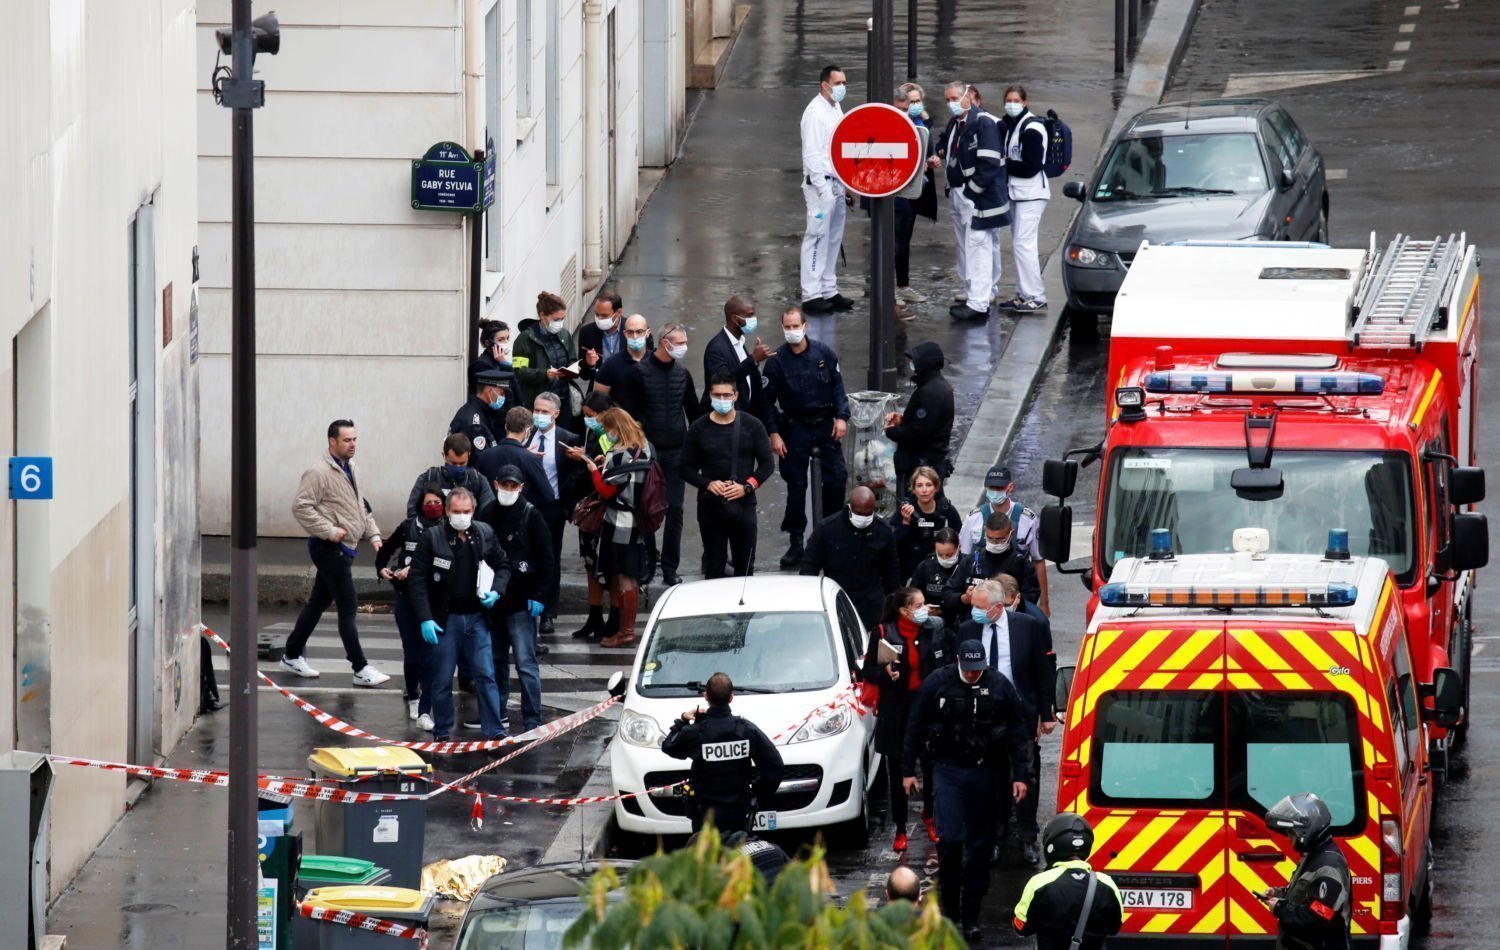 Теракт в франции. Шарли Эбдо теракт в Париже. Теракт в Париже 13 ноября 2015. Террористический акт в редакции Charlie Hebdo в Париже 7 января 2015 года.